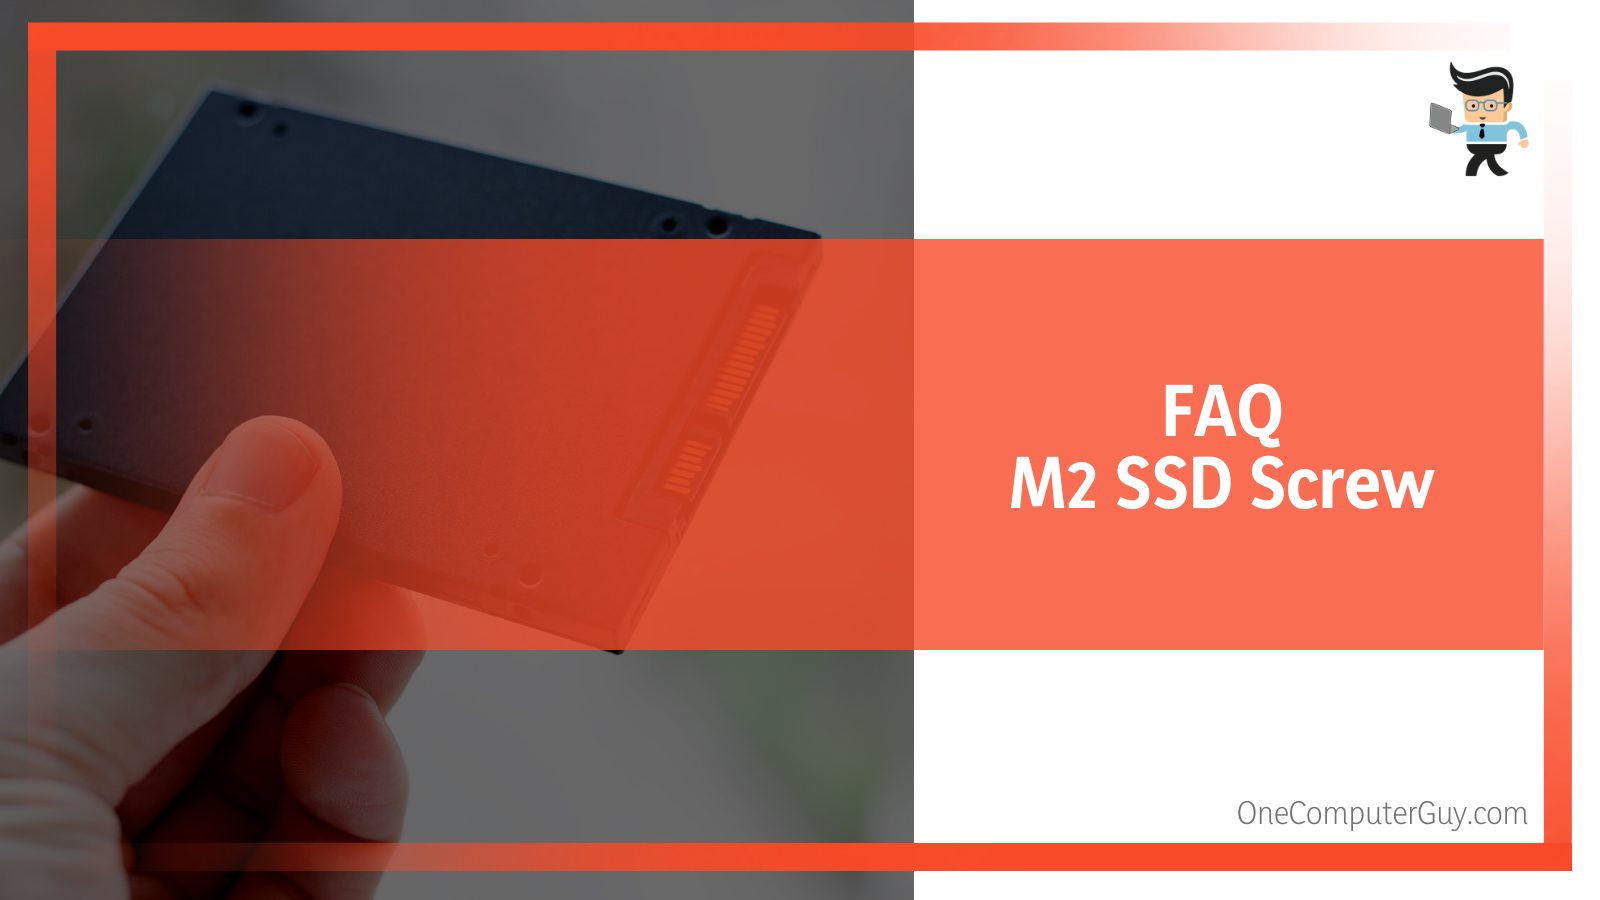 FAQ M2 SSD Screw